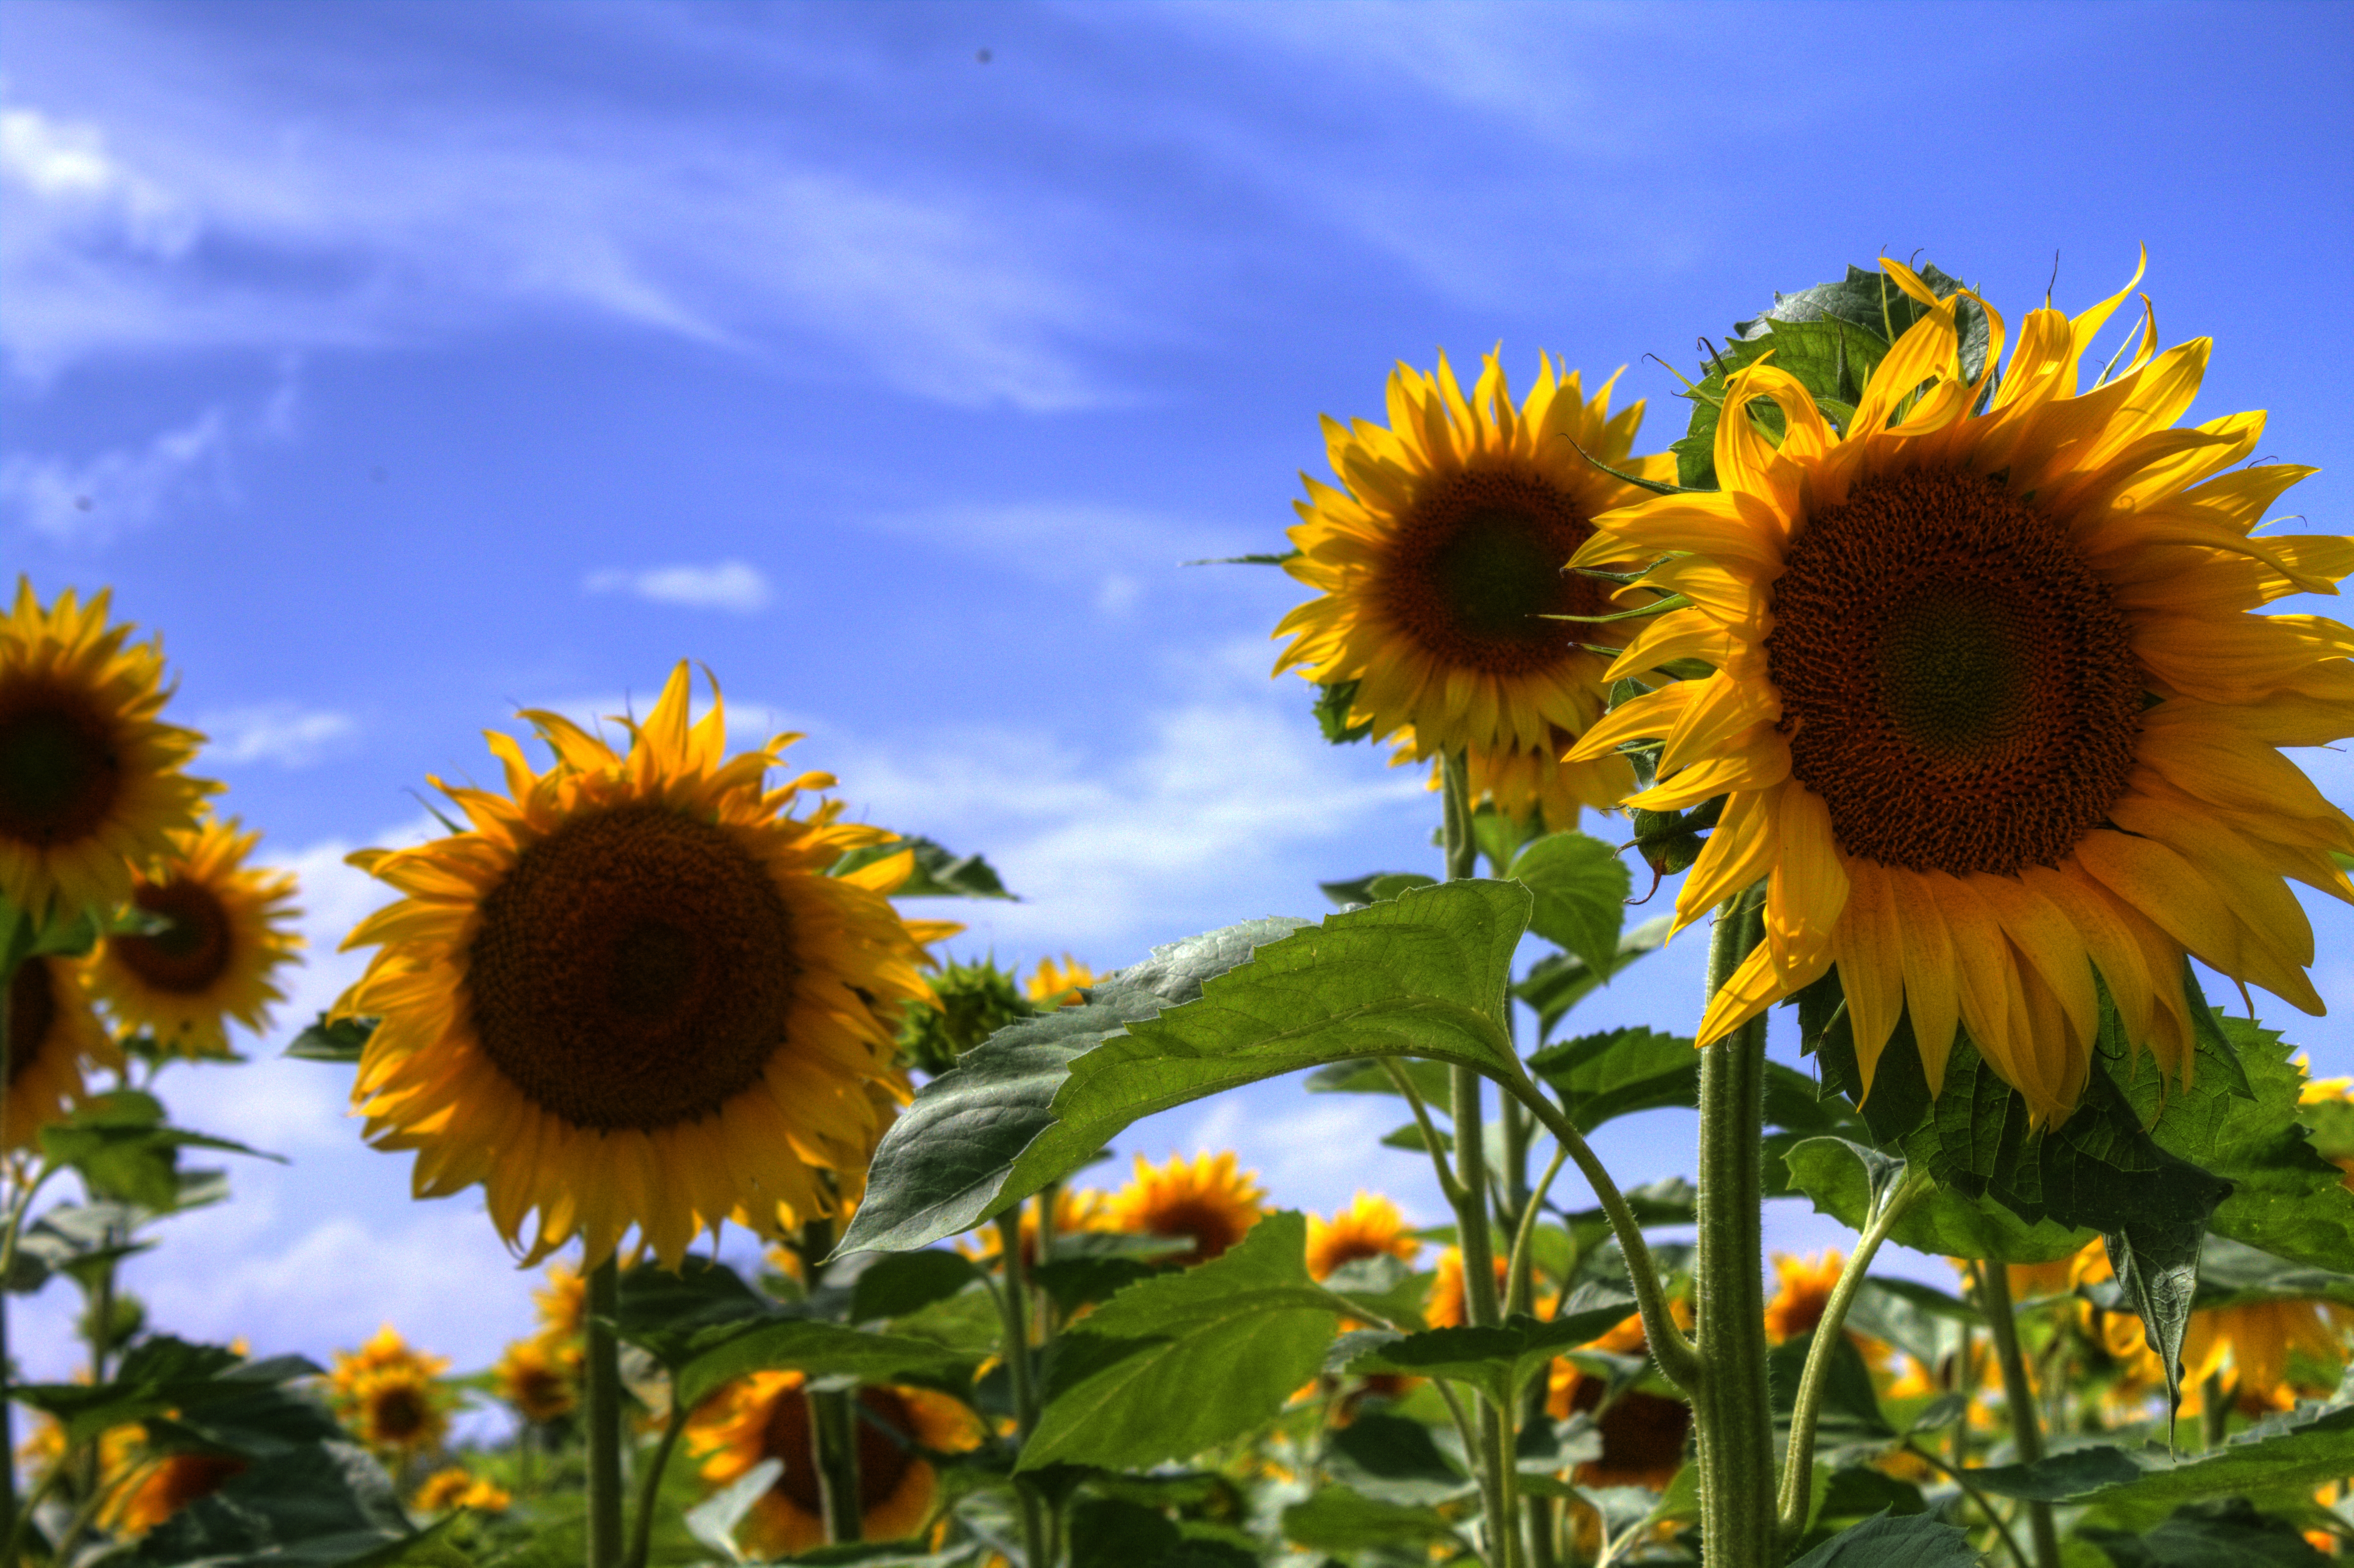 File:Sunflowers IMG 4309.jpg - Wikimedia Commons